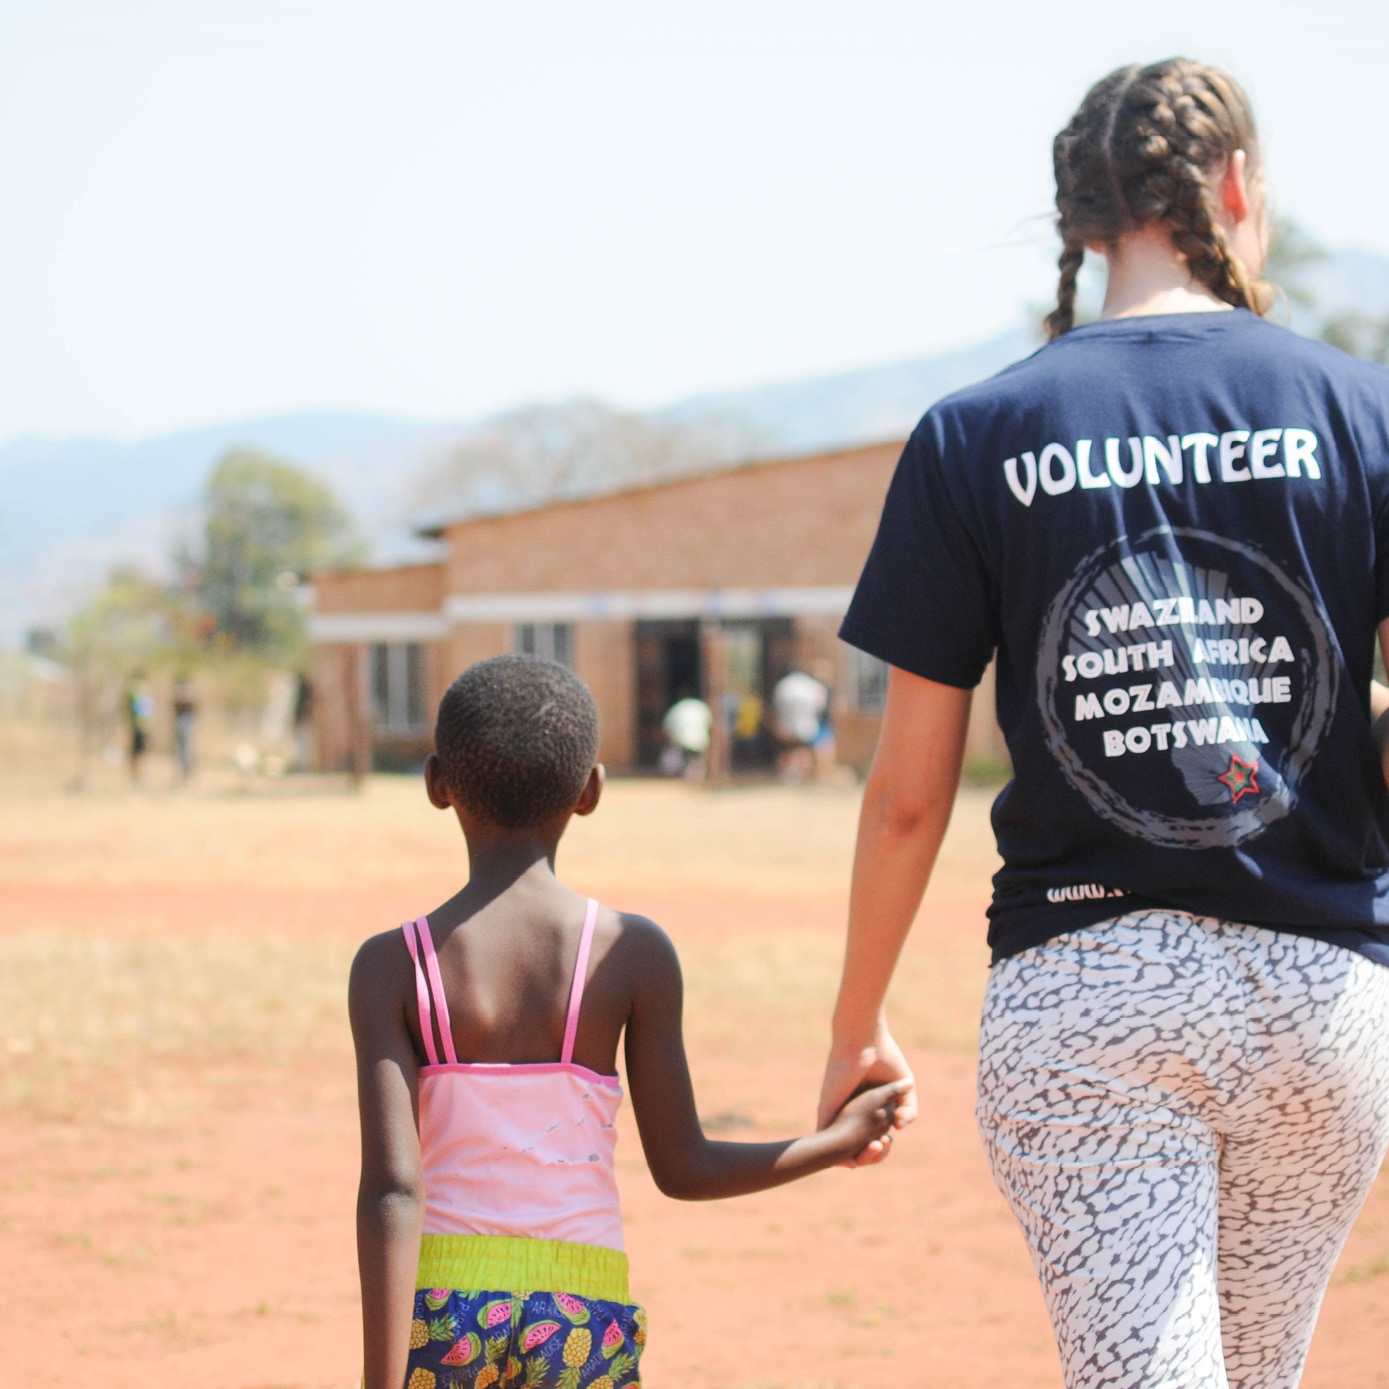 volunteering in africa essay